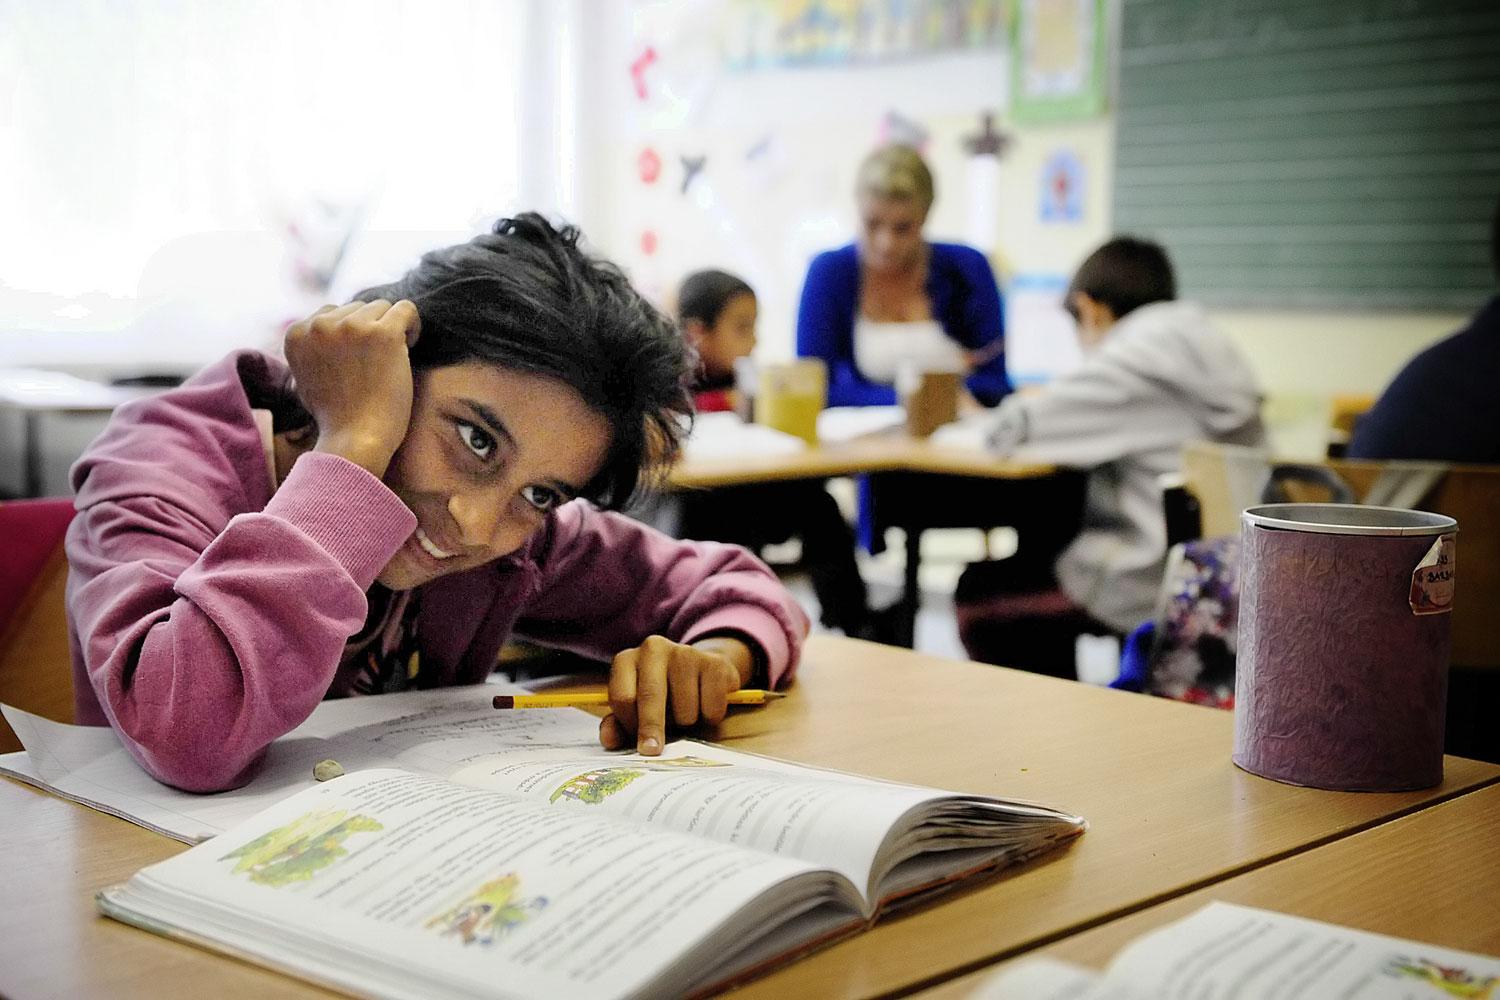 Európai vizsgálat folyik hazánk ellen az iskolai szegregáció miatt